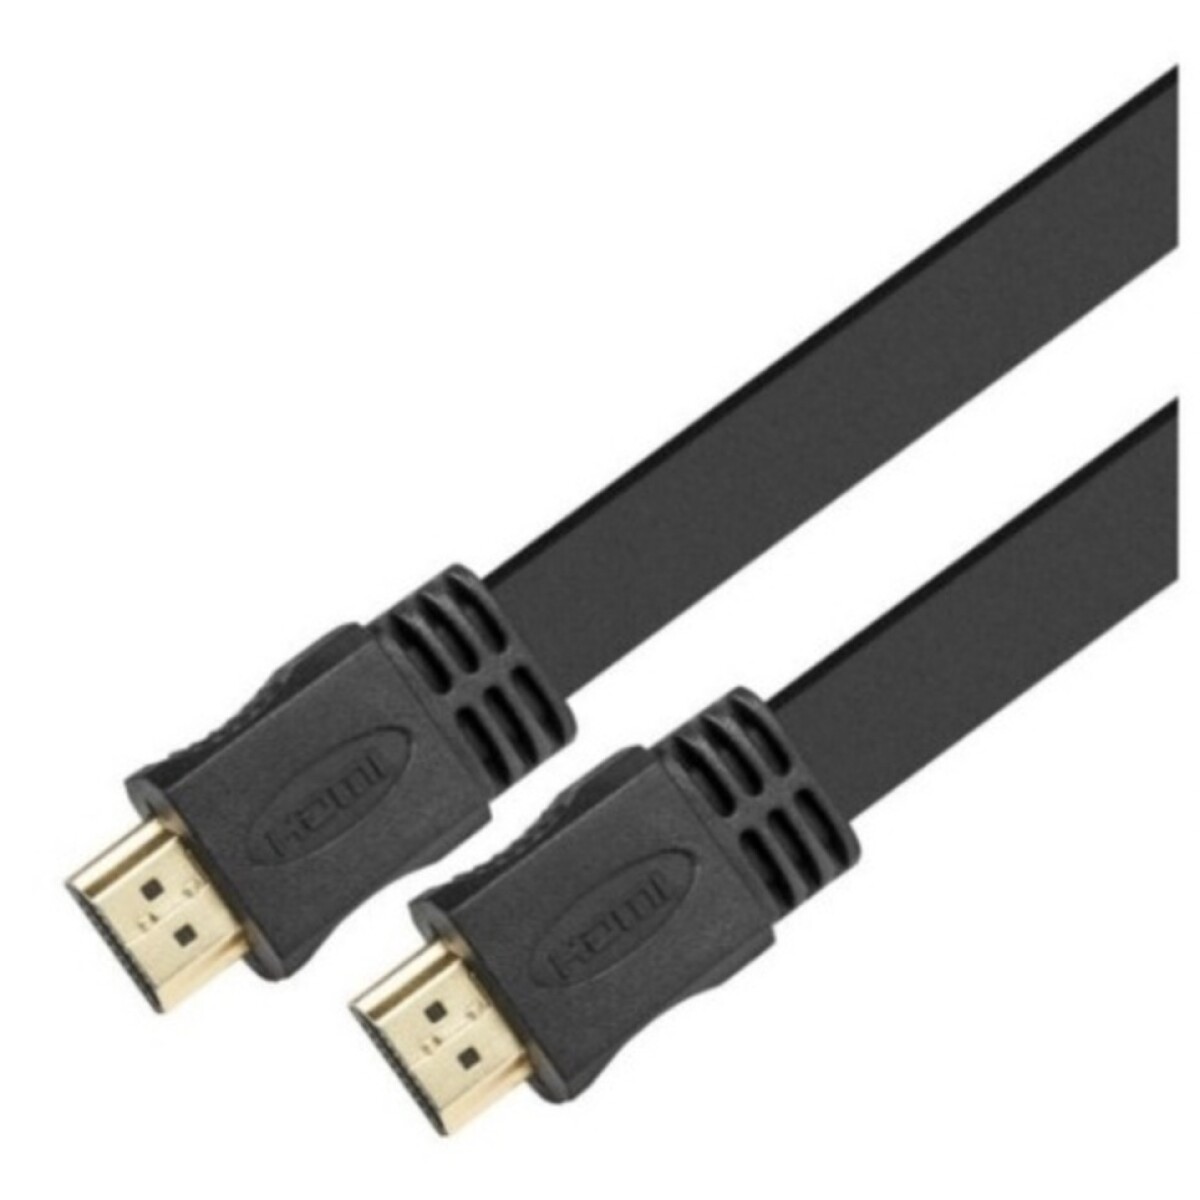 CABLE HDMI PLANO XTC 415 4.5MTS XTECH - No aplica 